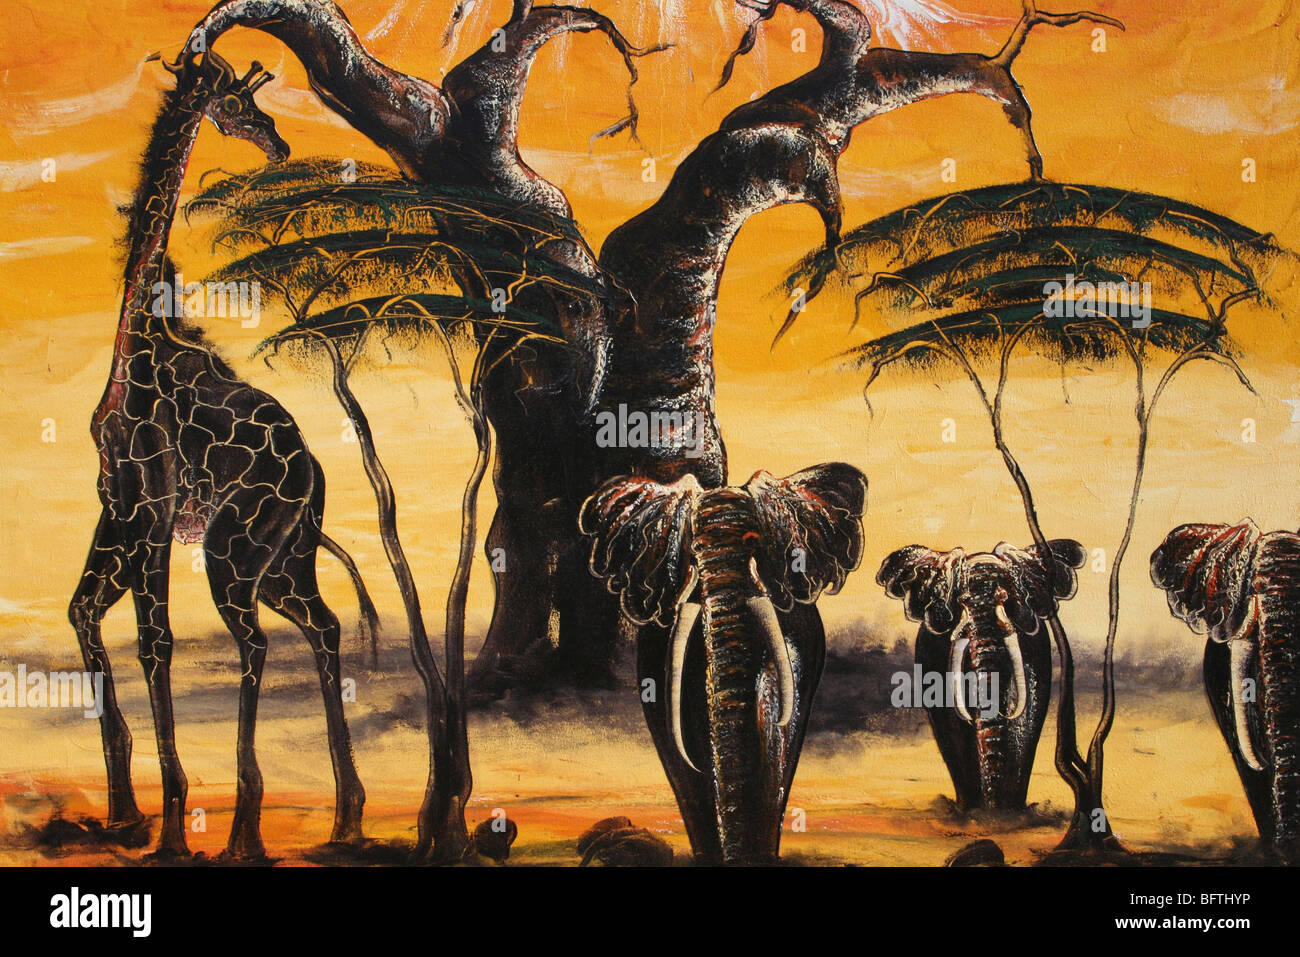 La faune africaine traditionnelle peinture prises à Mto Wa Mbu, Tanzanie Banque D'Images